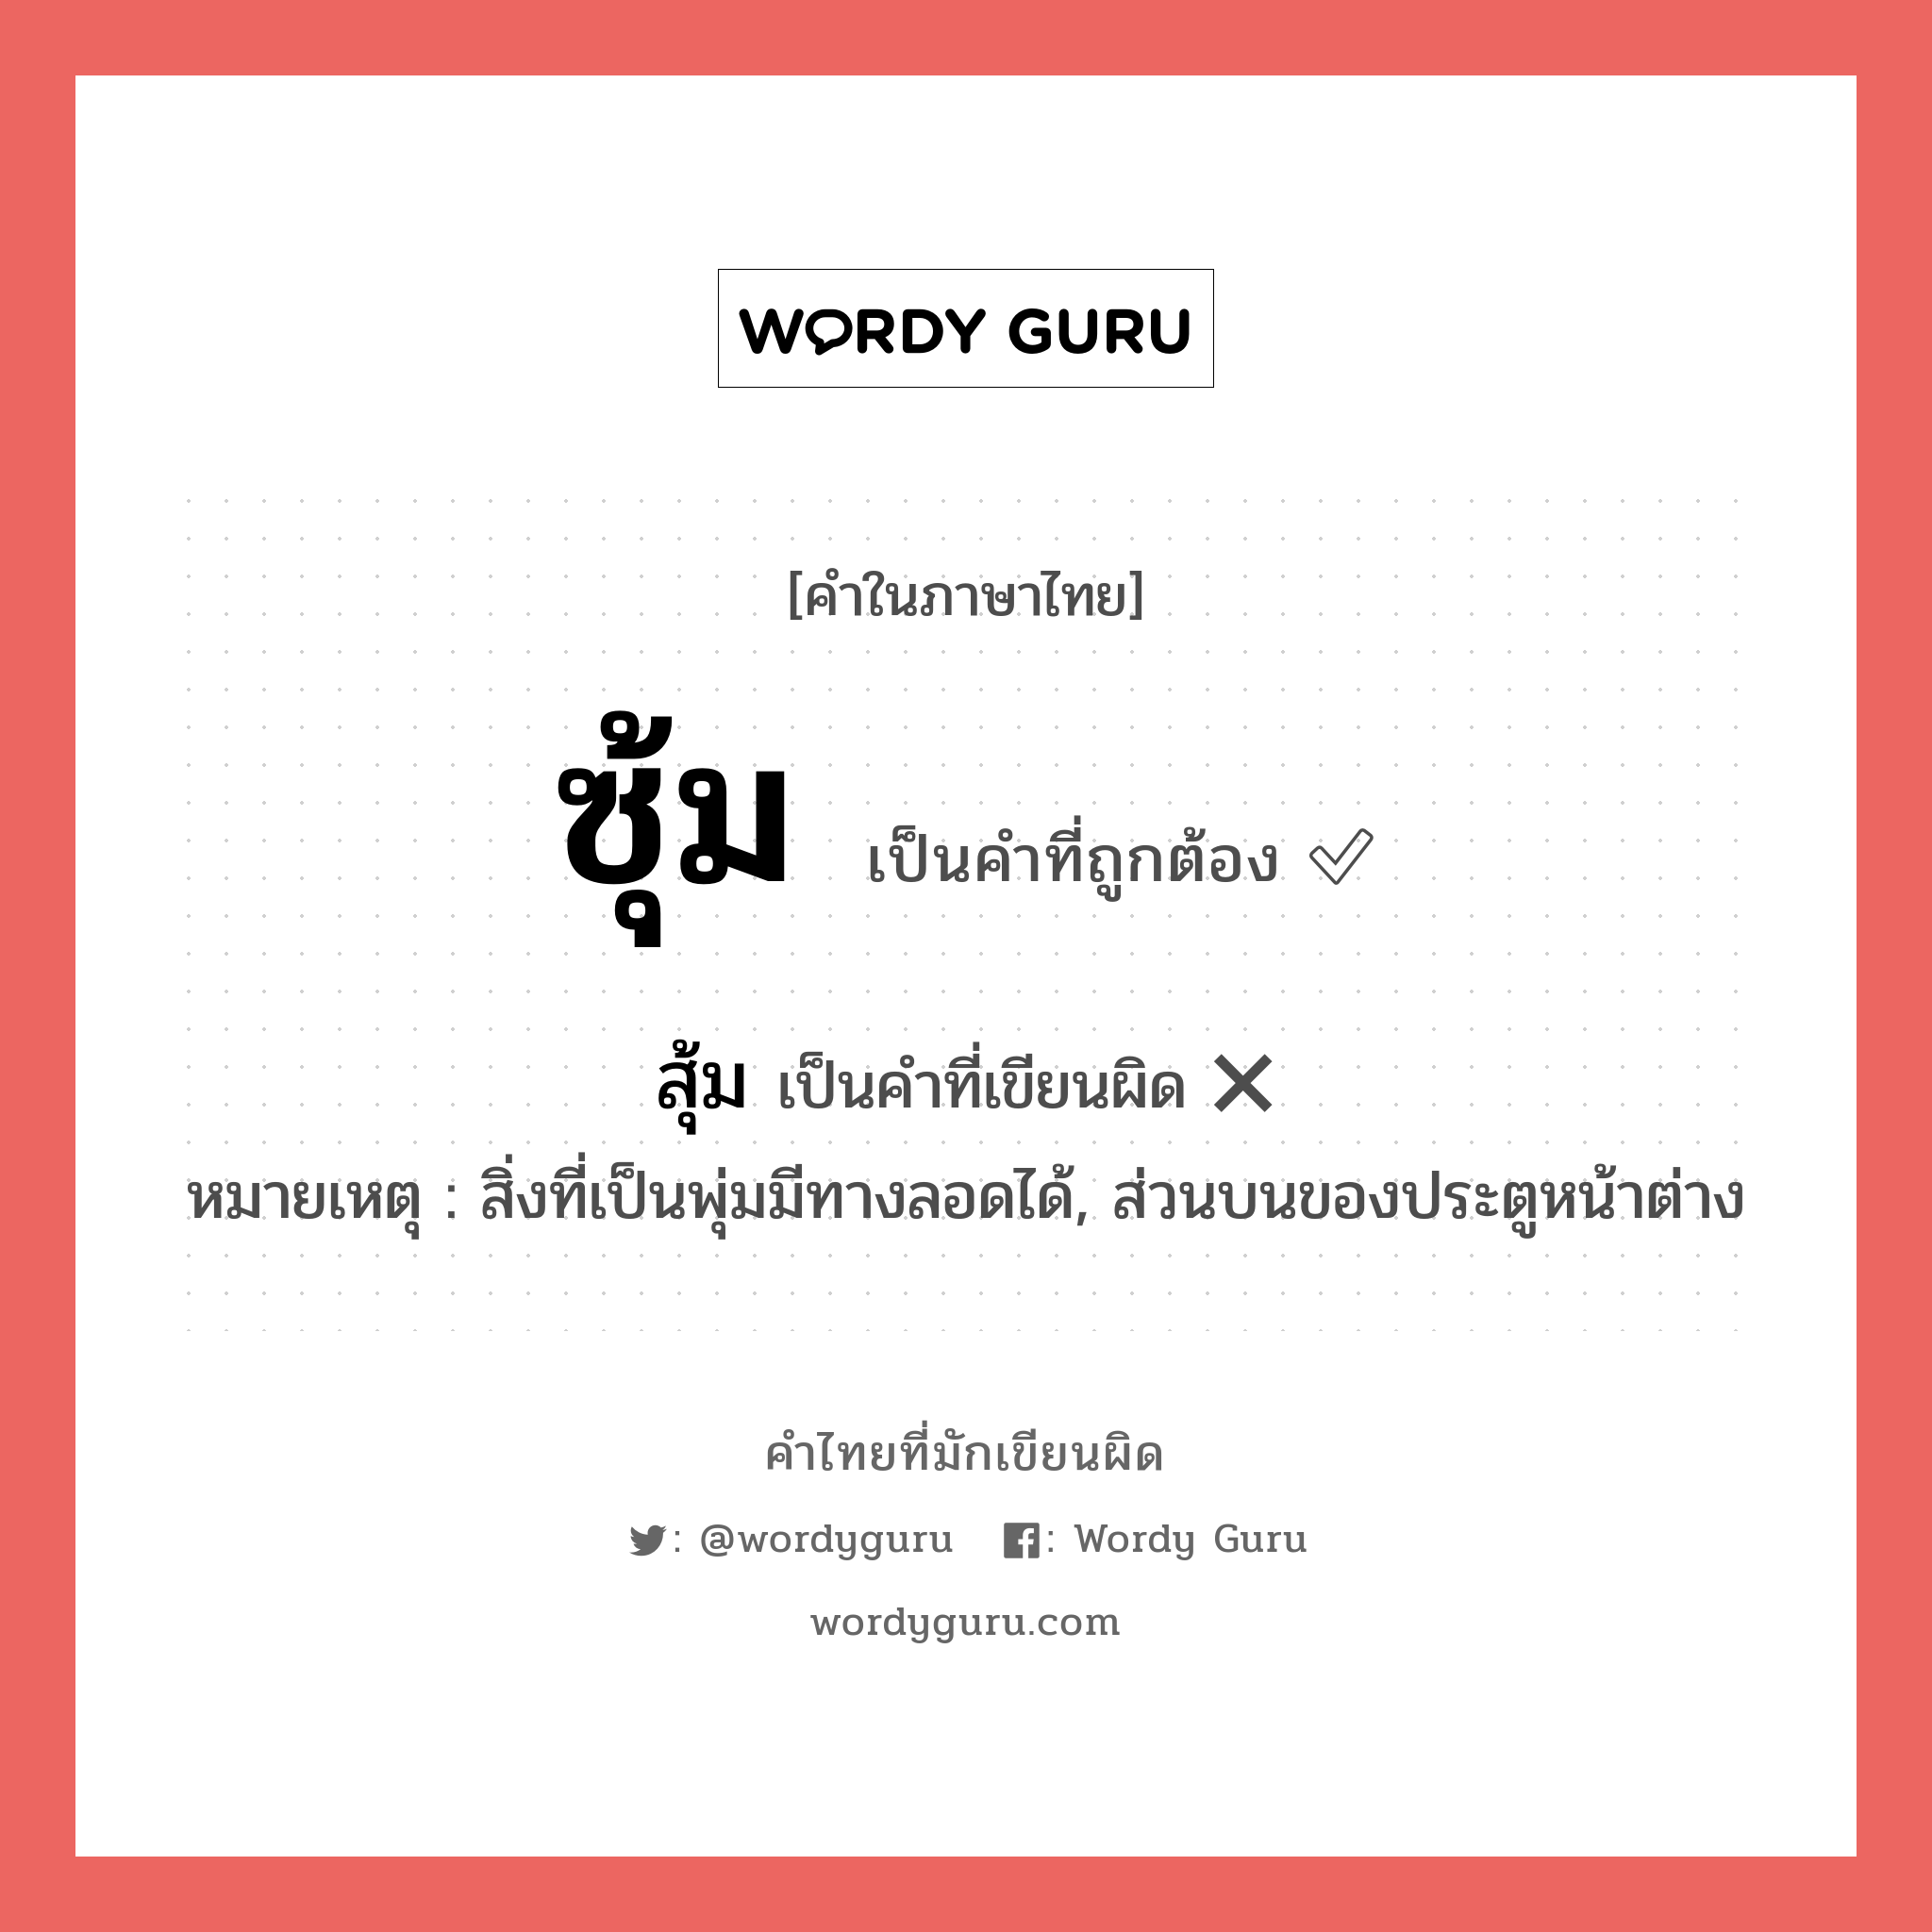 สุ้ม หรือ ซุ้ม คำไหนเขียนถูก?, คำในภาษาไทยที่มักเขียนผิด สุ้ม คำที่ผิด ❌ ซุ้ม หมายเหตุ สิ่งที่เป็นพุ่มมีทางลอดได้, ส่วนบนของประตูหน้าต่าง